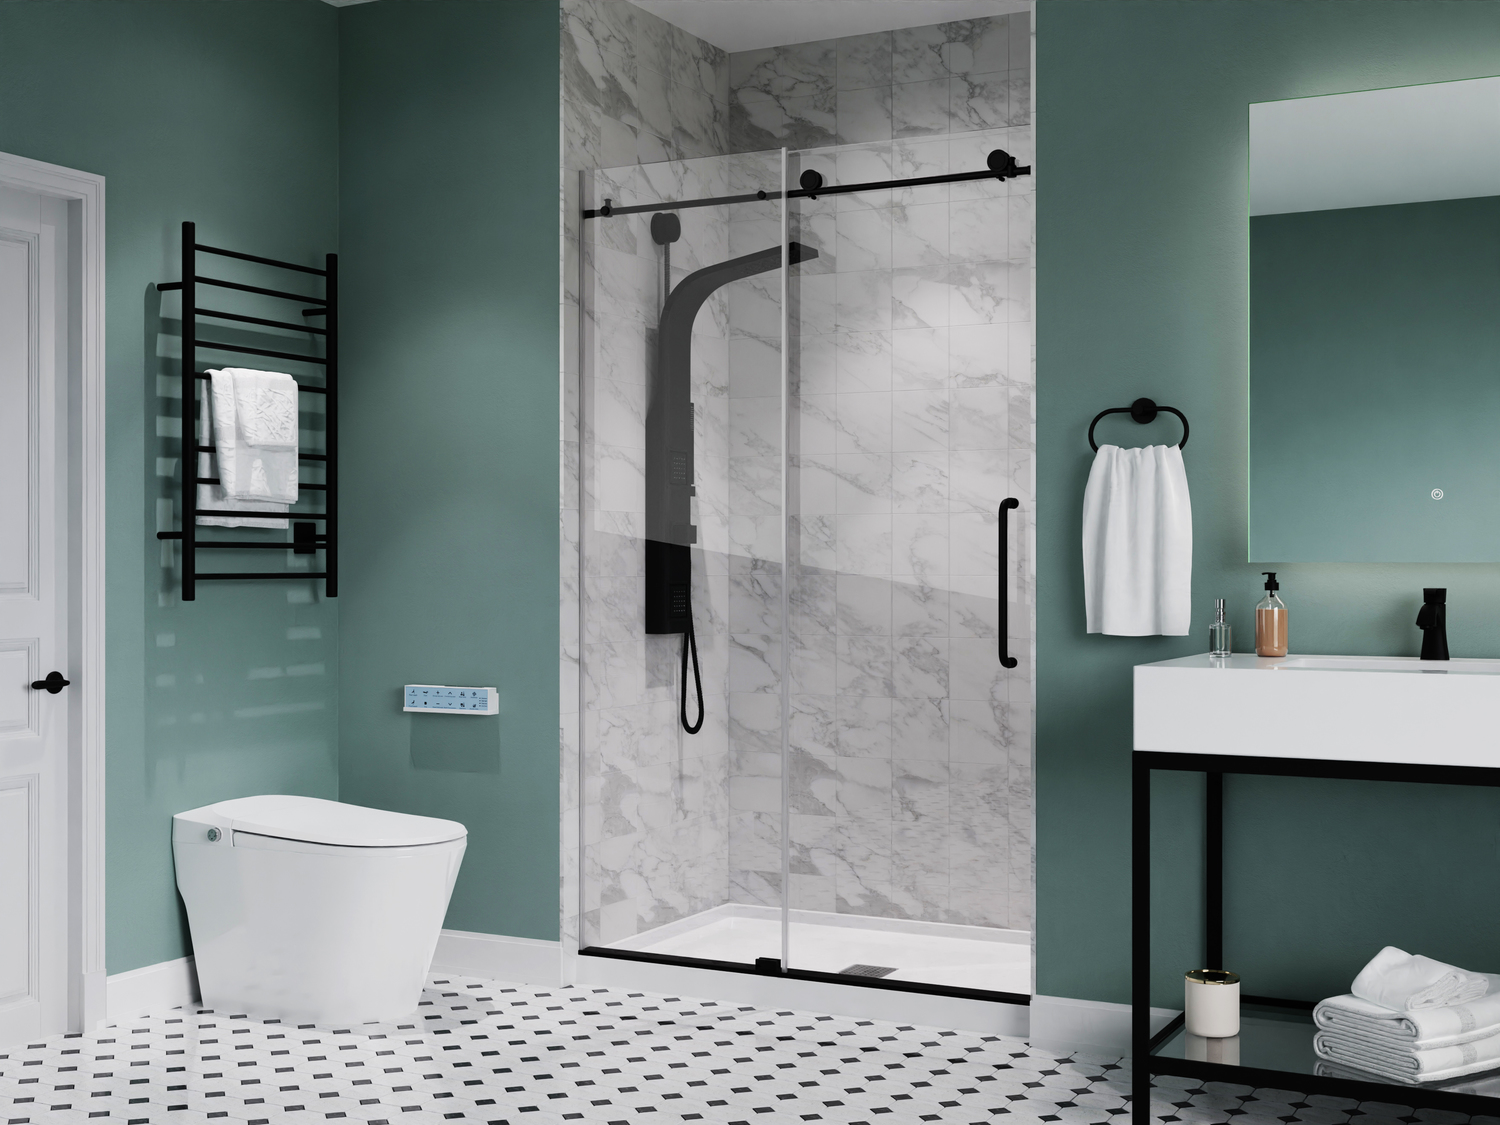 48 x 32 shower pan center drain Anzzi SHOWER - Shower Bases - Single Threshold White